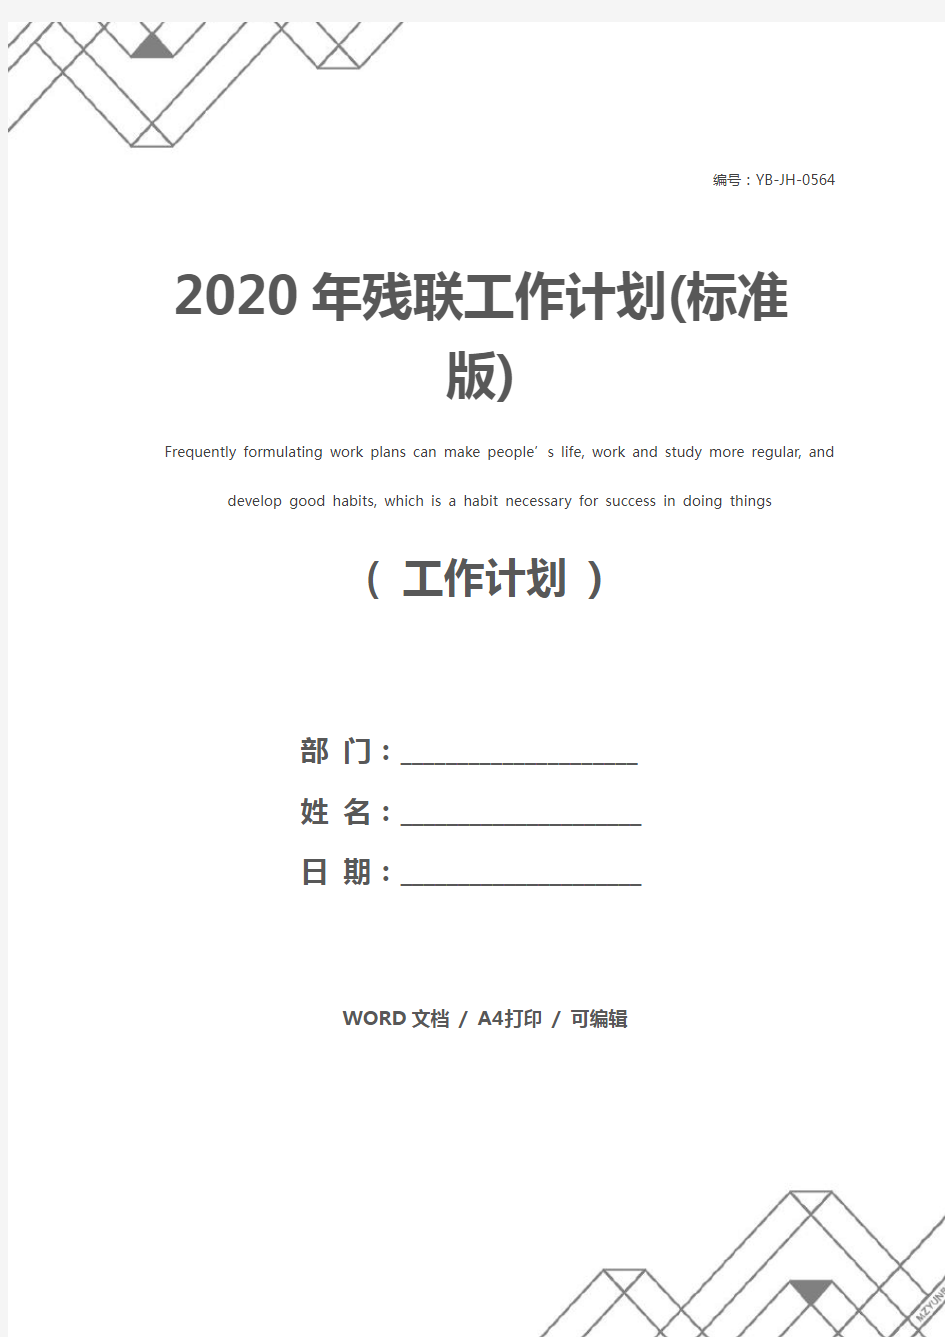 2020年残联工作计划(标准版)